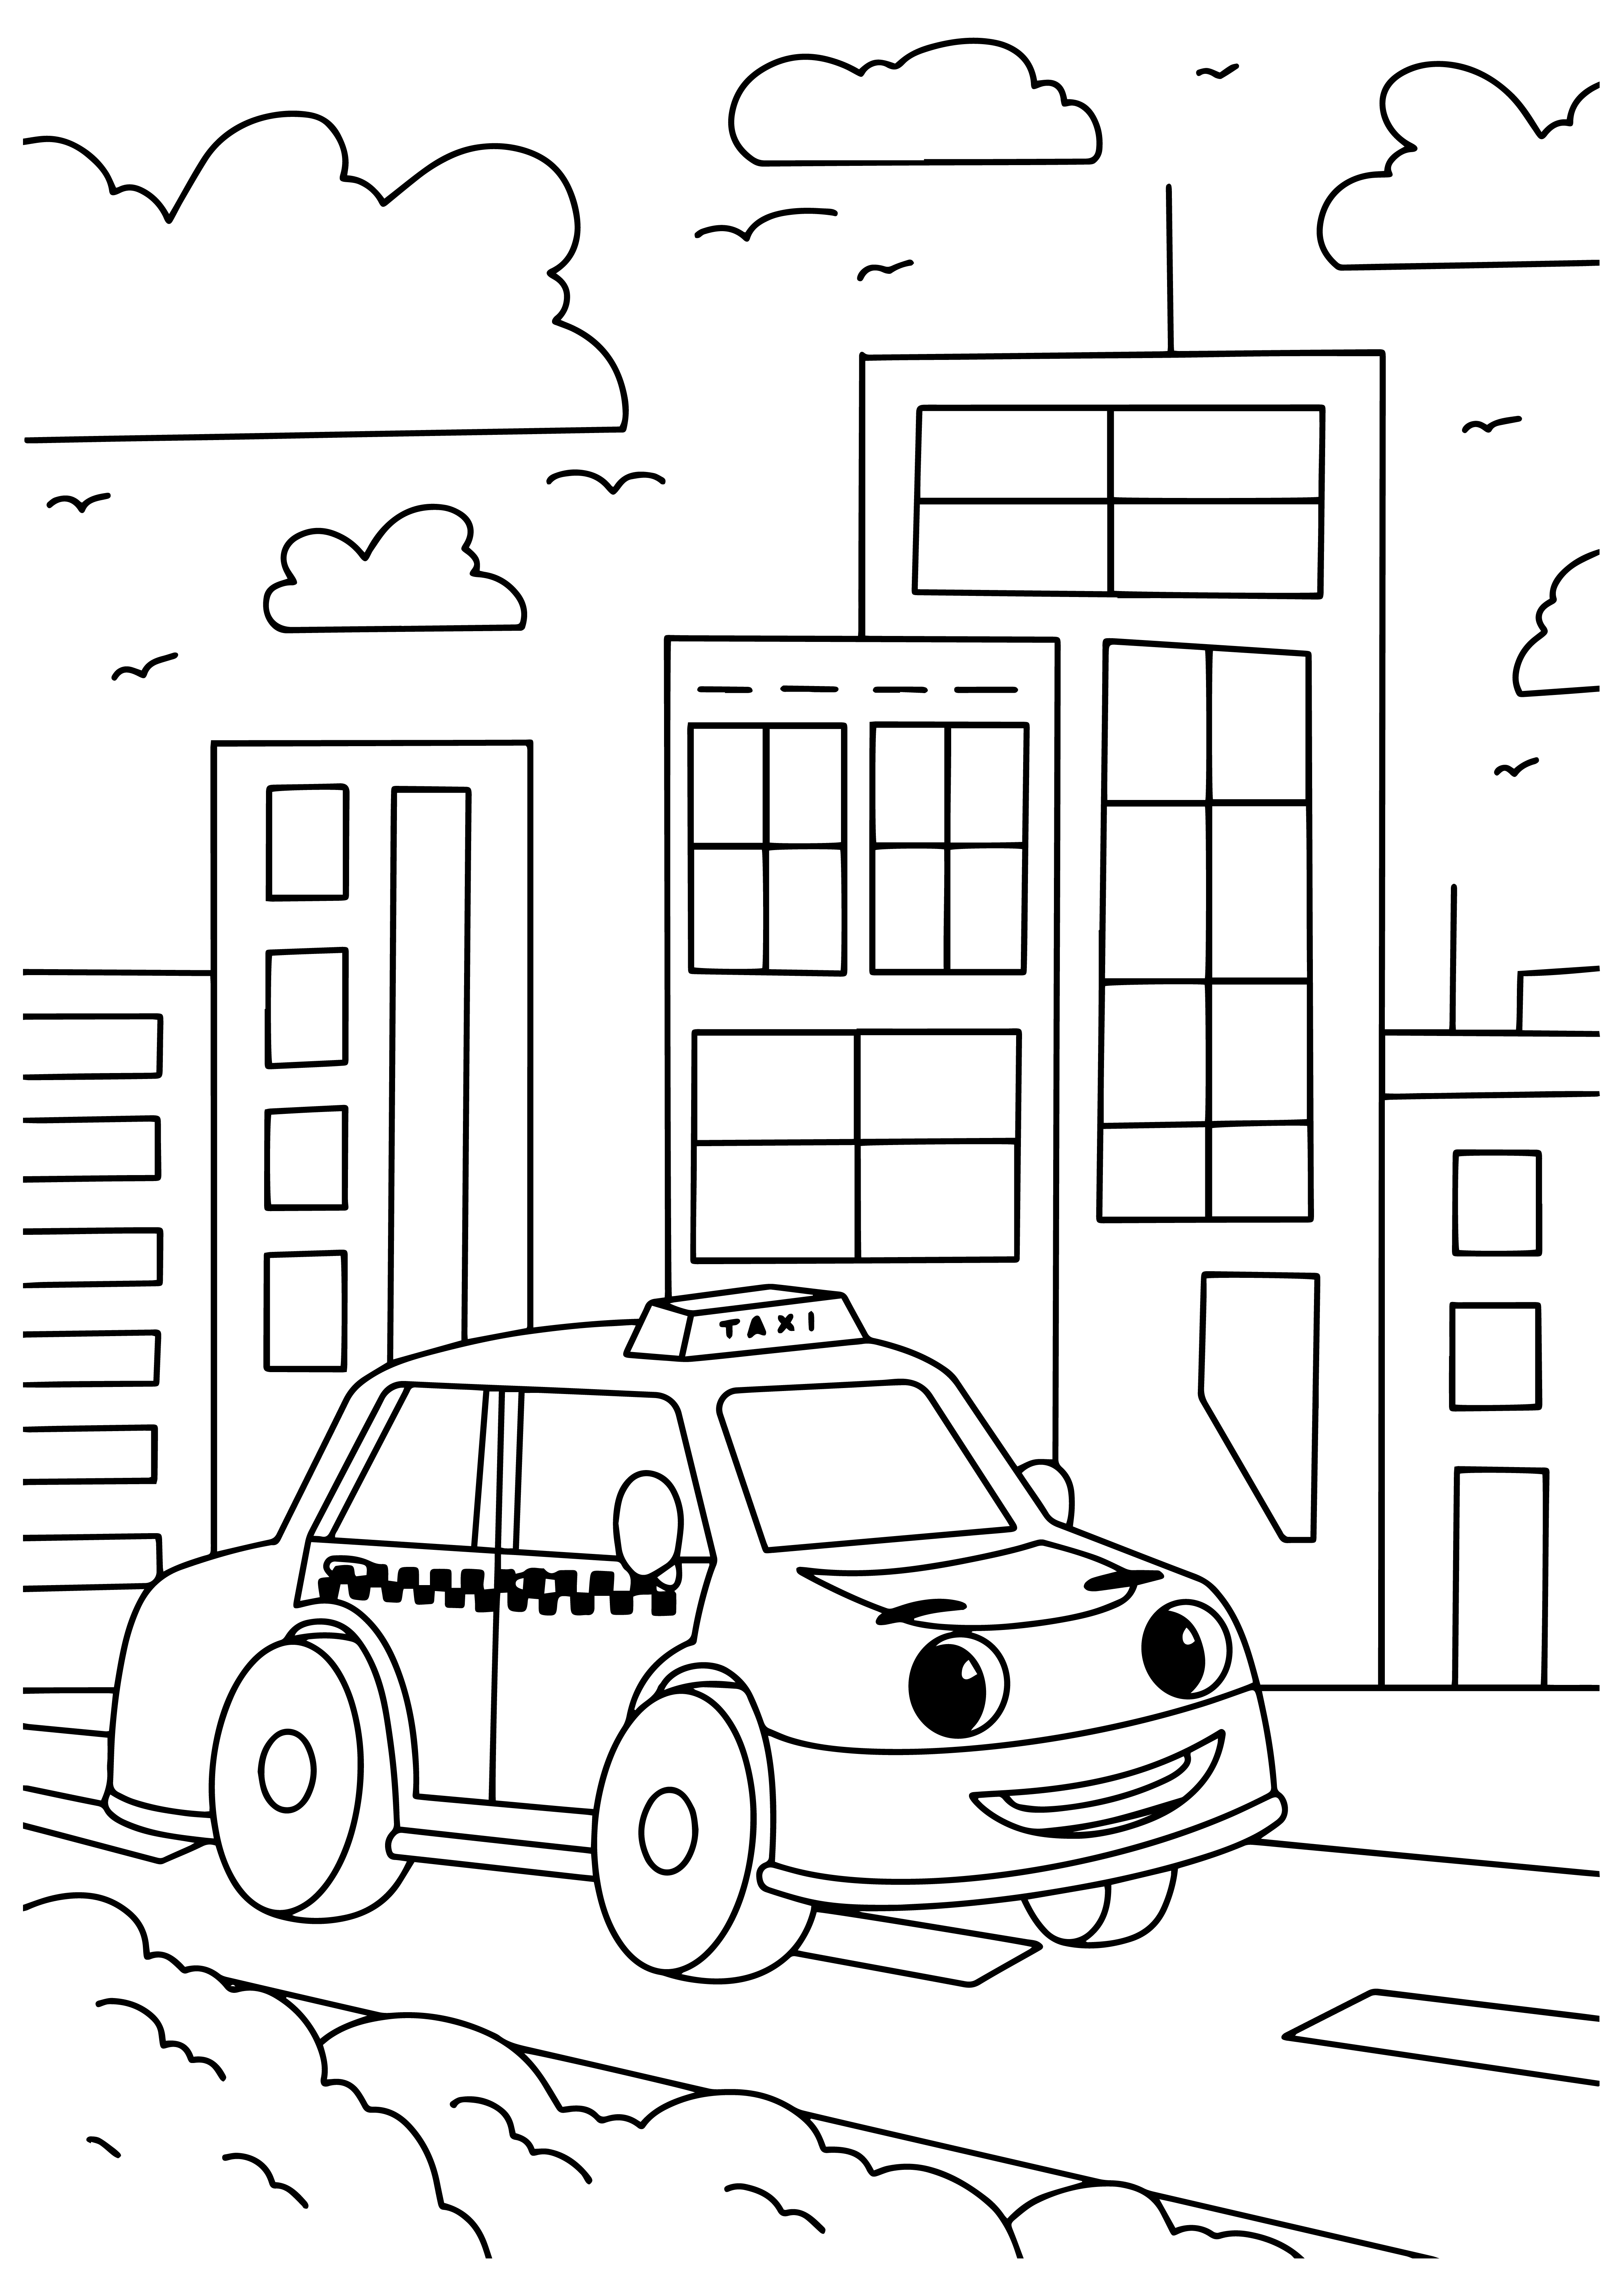 Раскраска мультяшное такси с глазами едет по городу формата А4 в высоком качестве